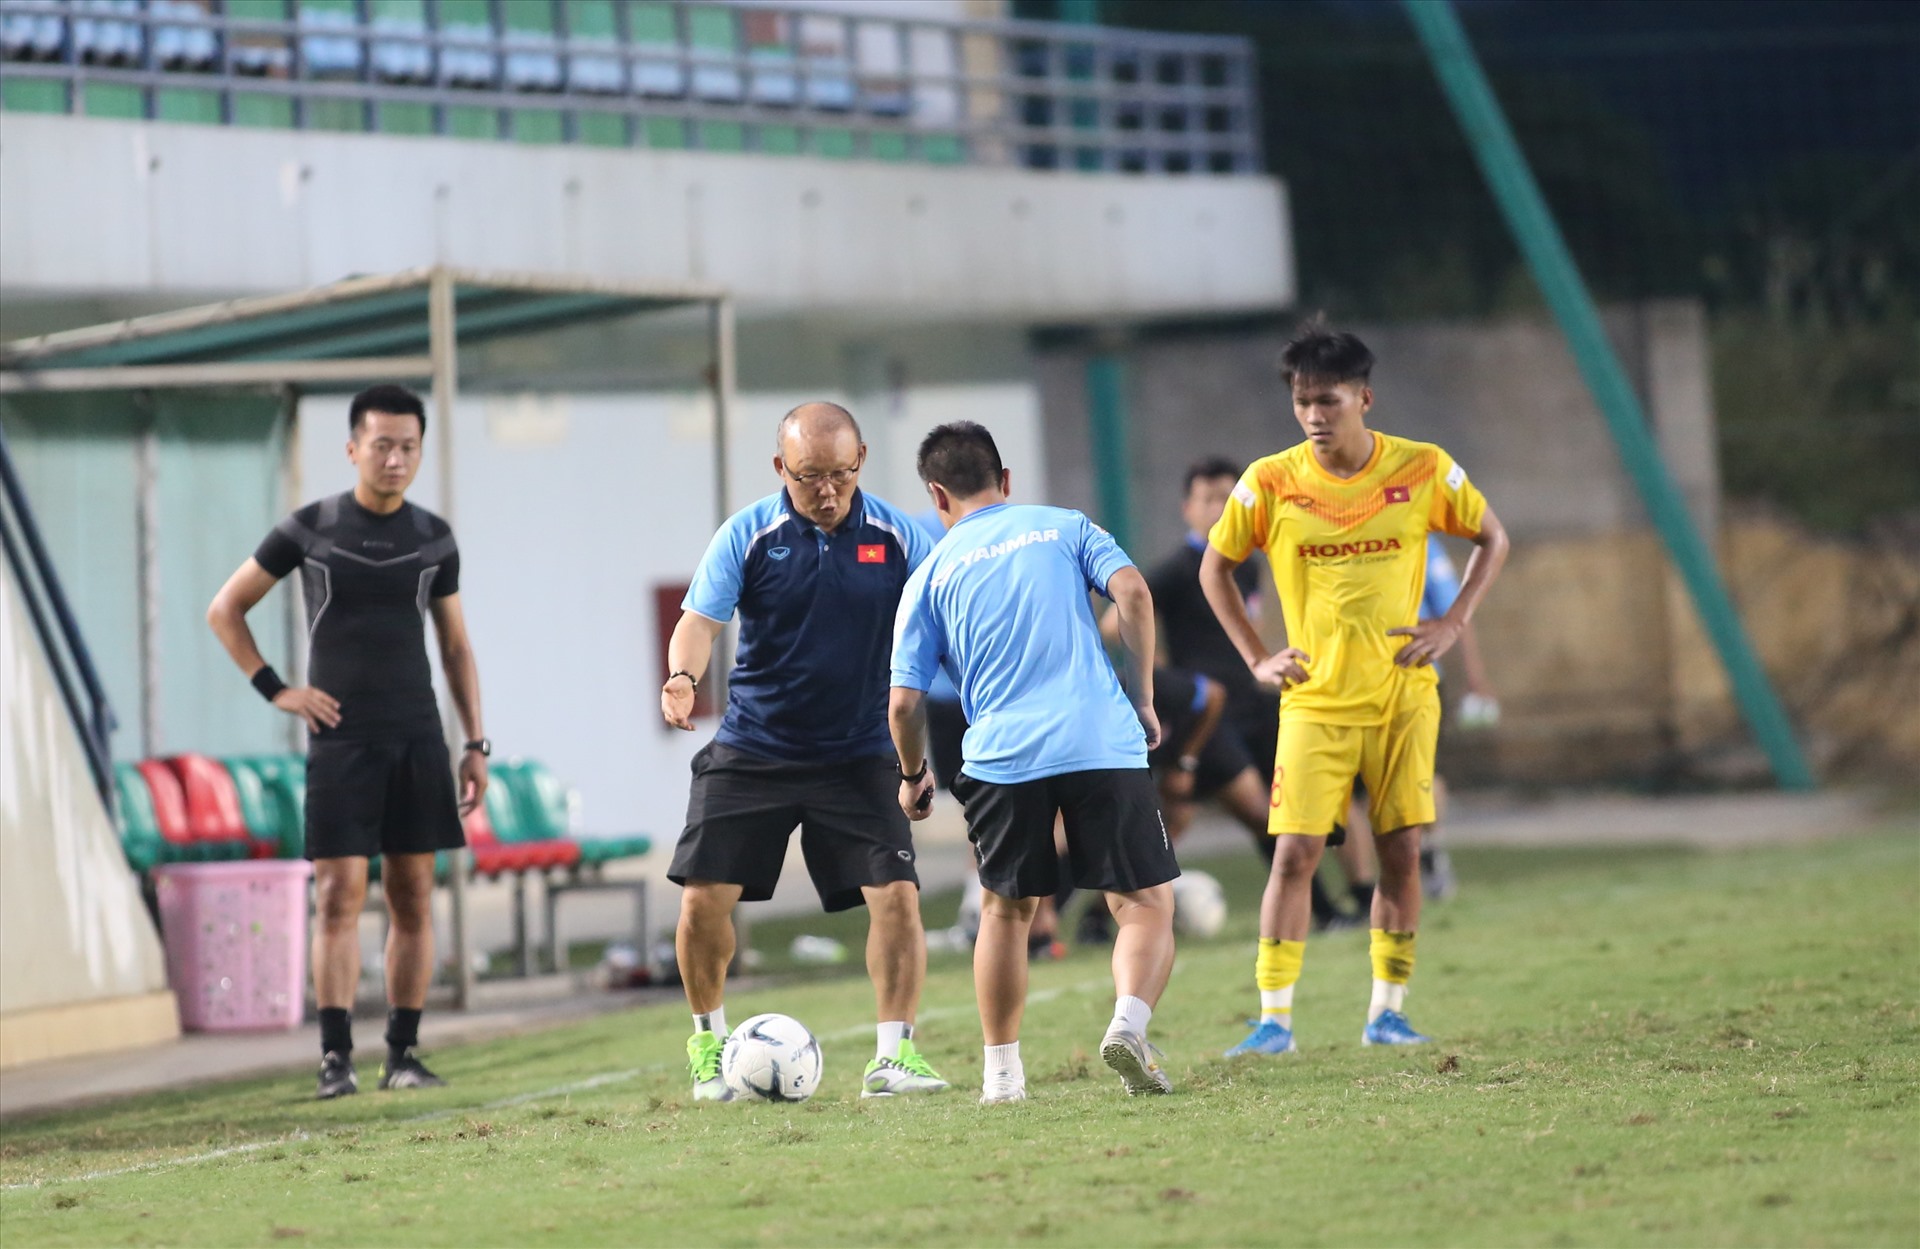 Khi trận đấu kết thúc, tiền đạo bảo Toàn của Hoàng Anh Gia Lai bị huấn luyện viên Park Hang-seo gọi riêng ra để chỉ cách đi bóng khi bị áp sát ở biên.